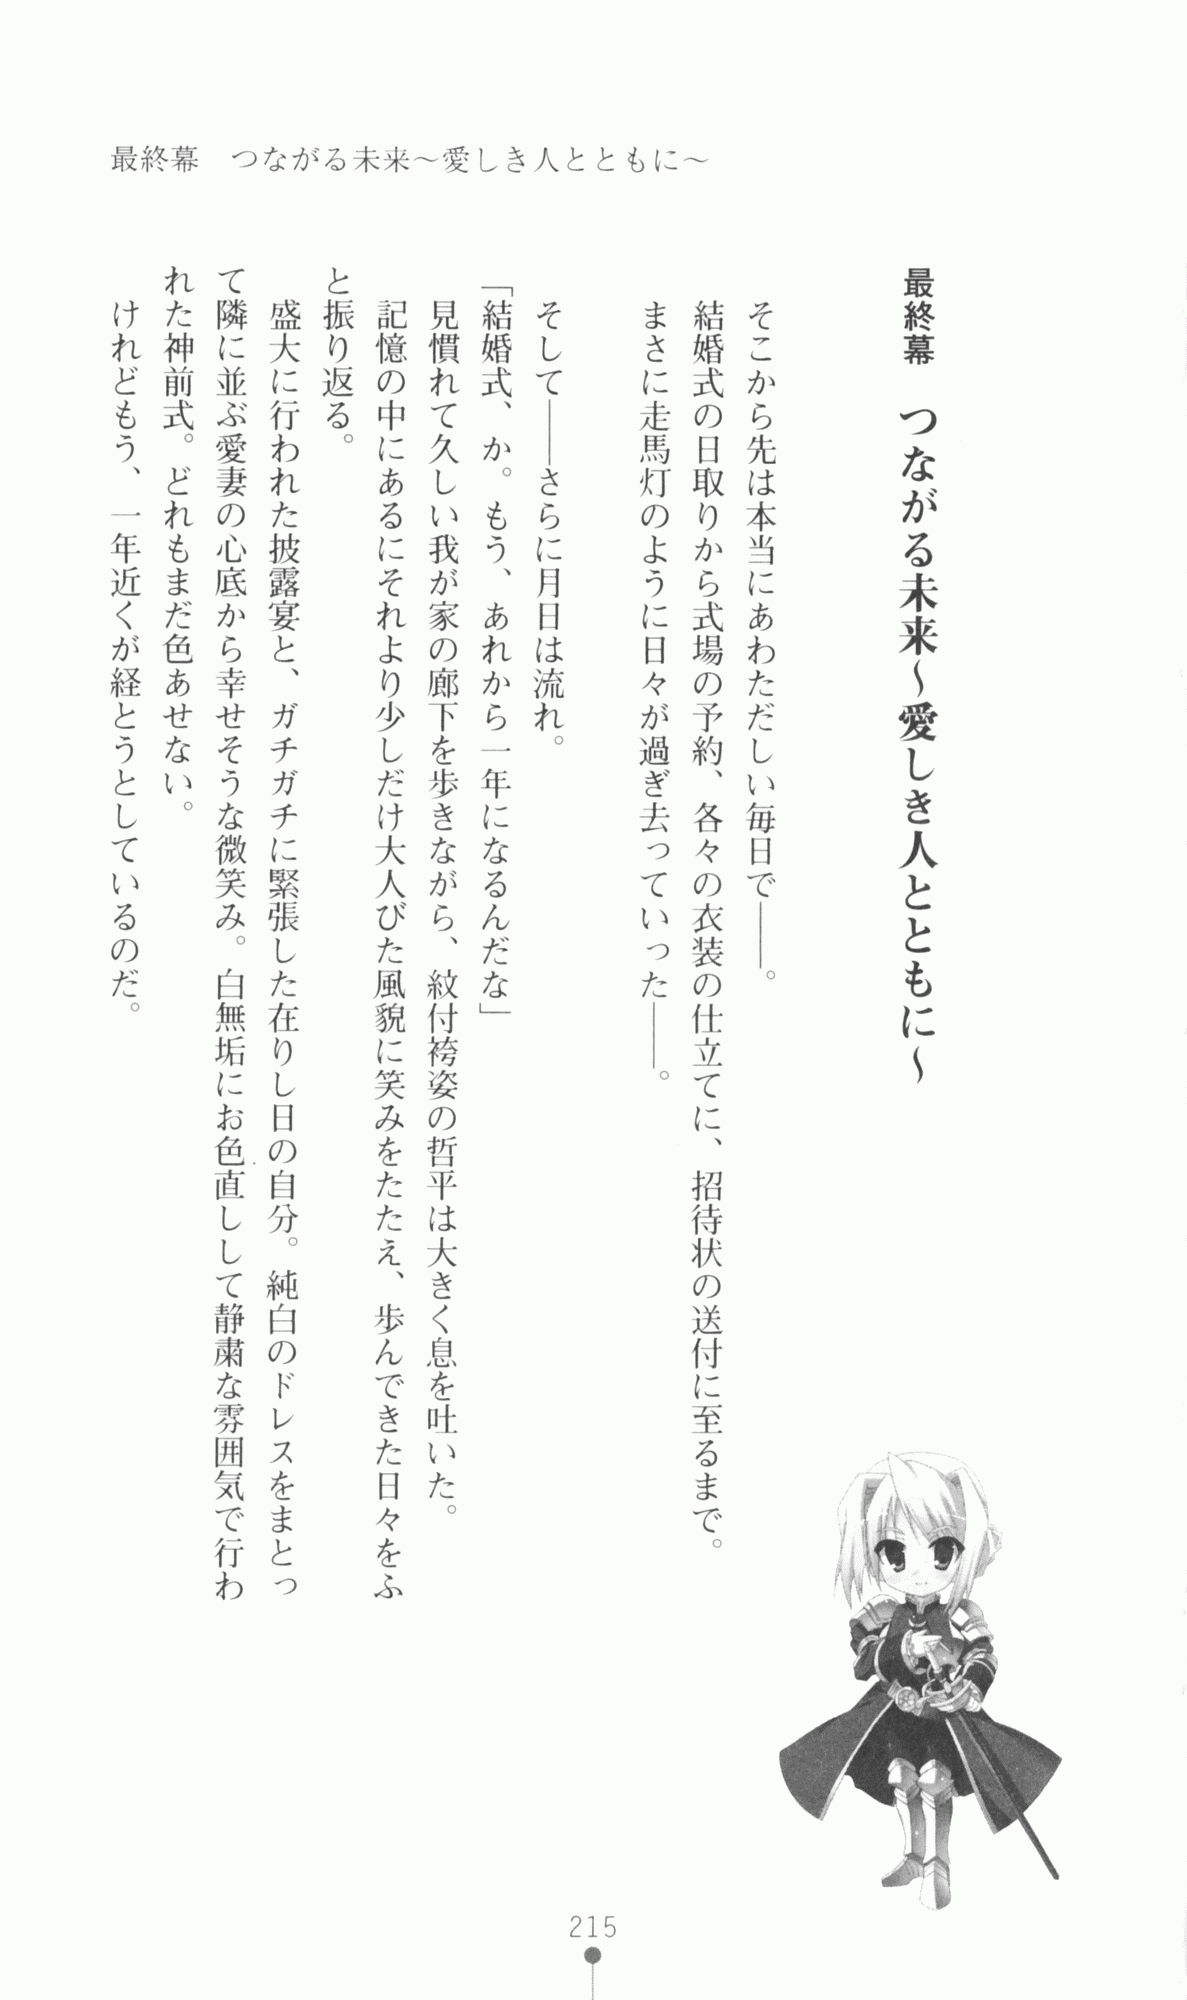 [Utsusemi × Yoshi Hyuma, Komori Kei] Princess Lover! Sylvia van Hossen no Koiji 2 (Original by Ricotta) 238